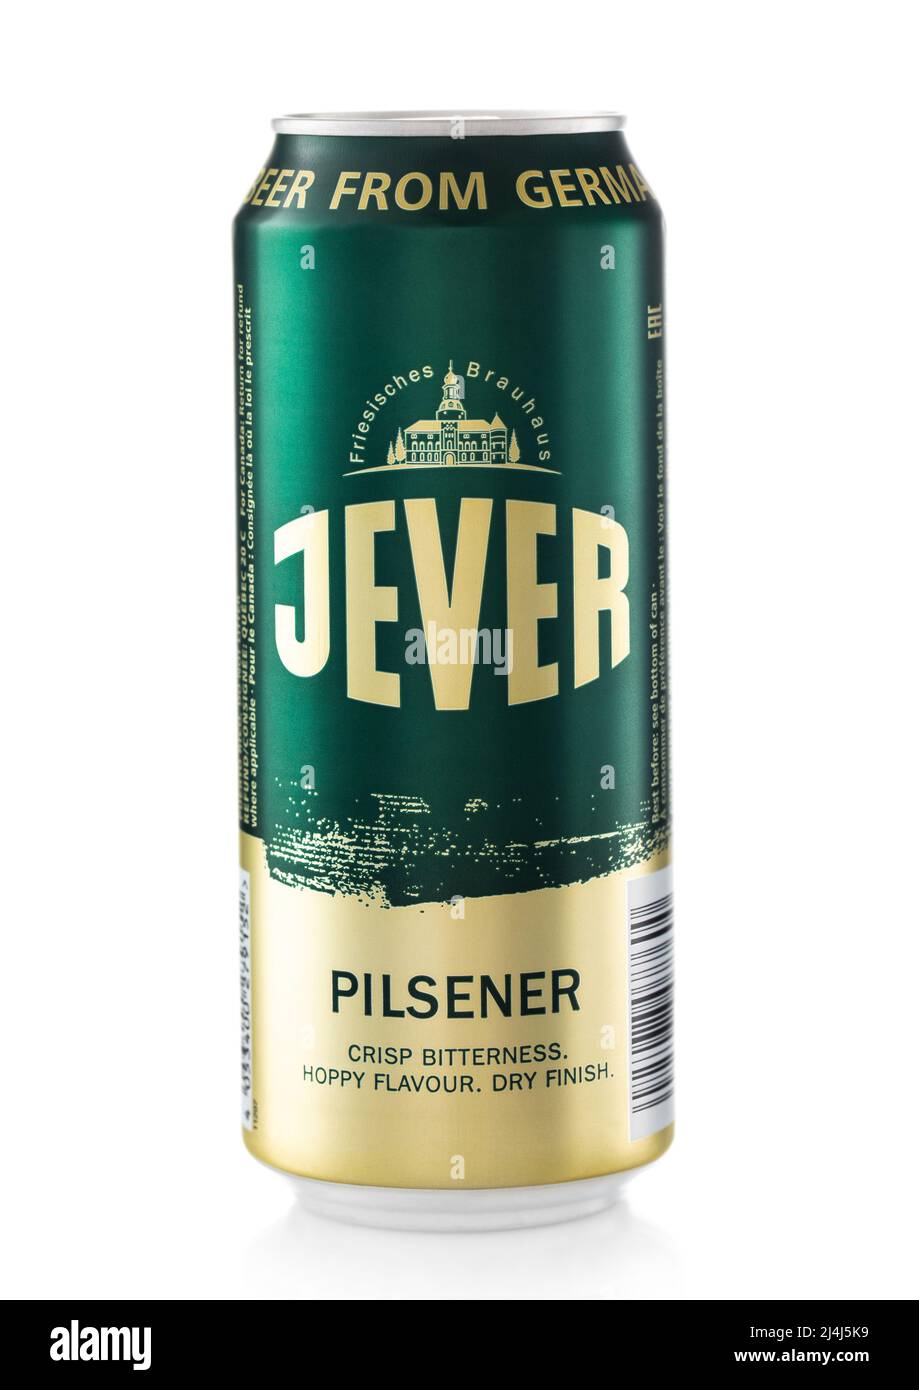 LONDON,UK - FEBRUARY 10,2022: Jever Pilsner lager beer on white background. Stock Photo